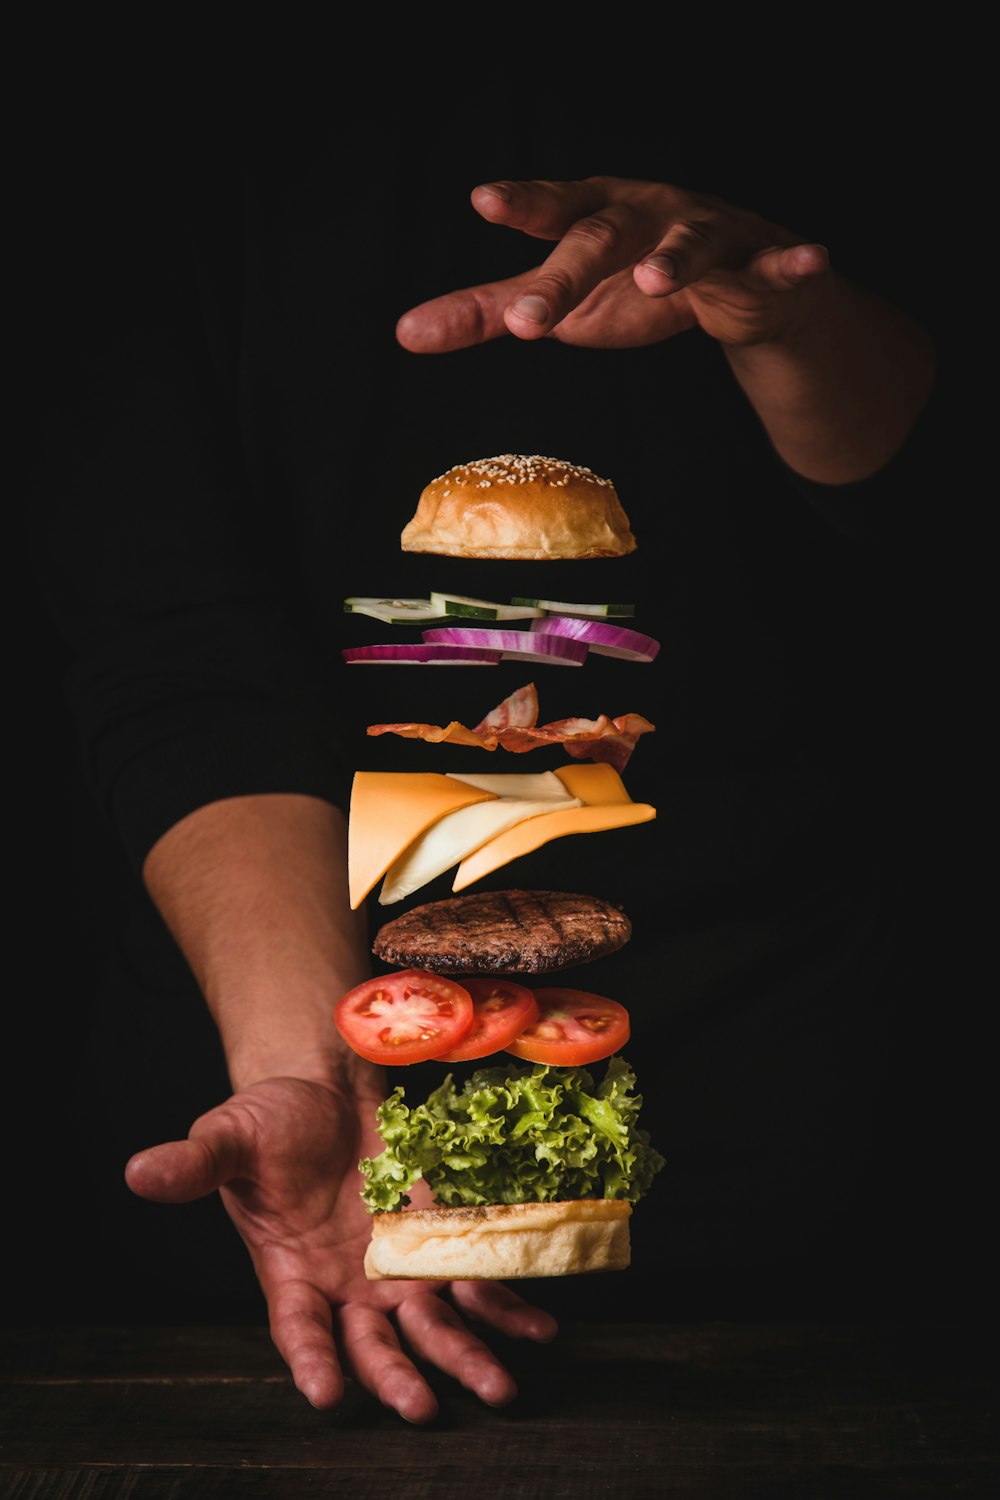 Zeitrafferfoto eines Mannes mit Burger